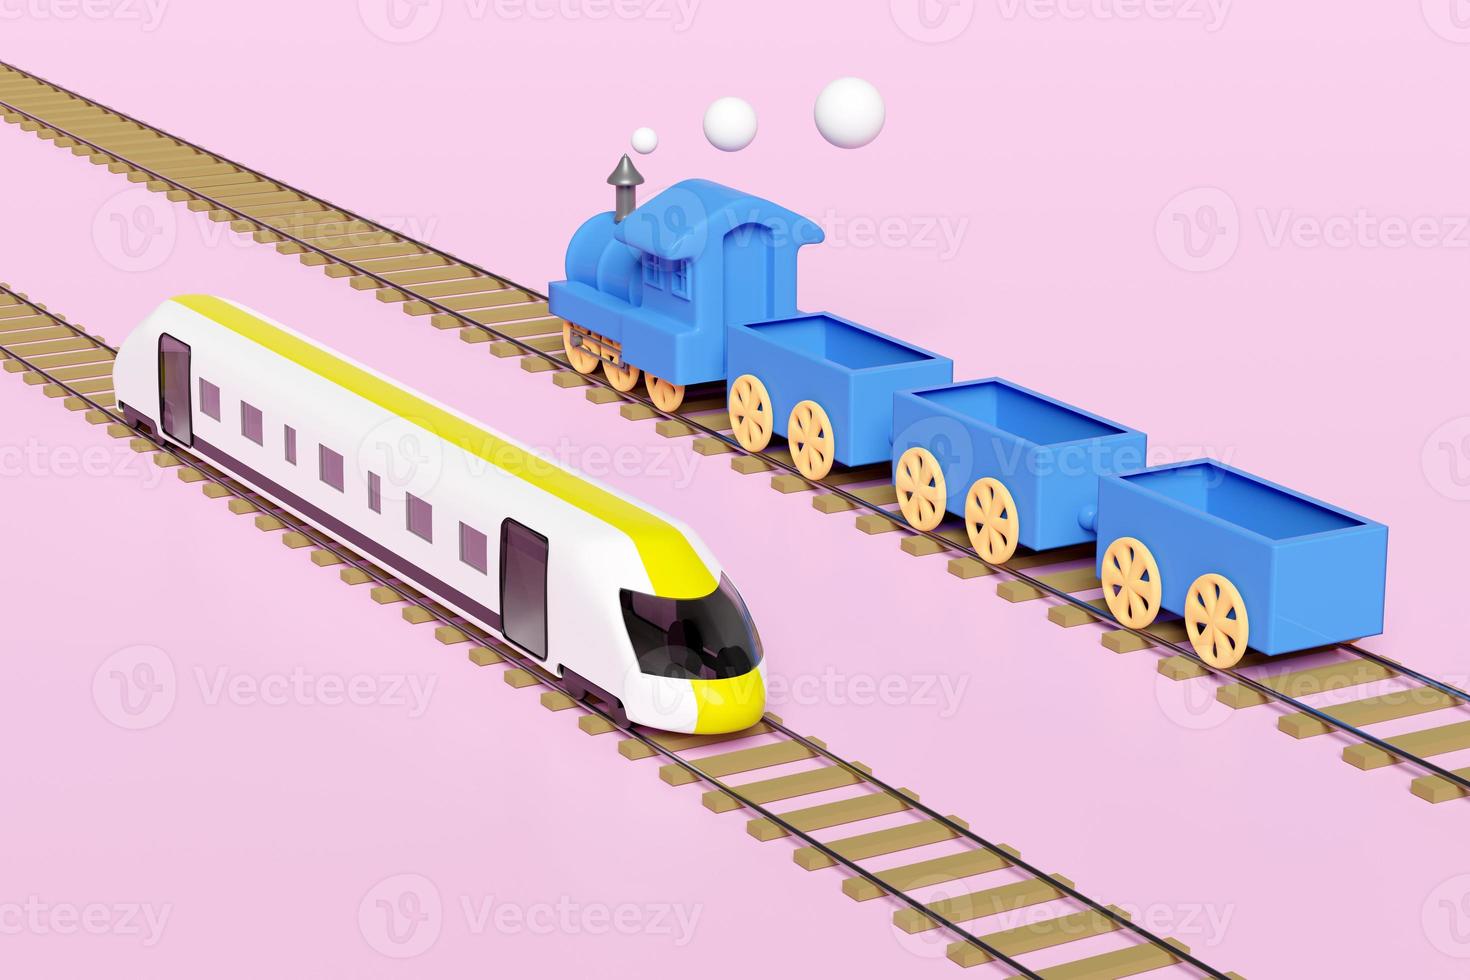 Locomotora 3d, tren bala con vías férreas, juguete de transporte de tren de vapor, planificación de tren turístico aislado en fondo rosa. Ilustración de procesamiento 3D, trazado de recorte foto